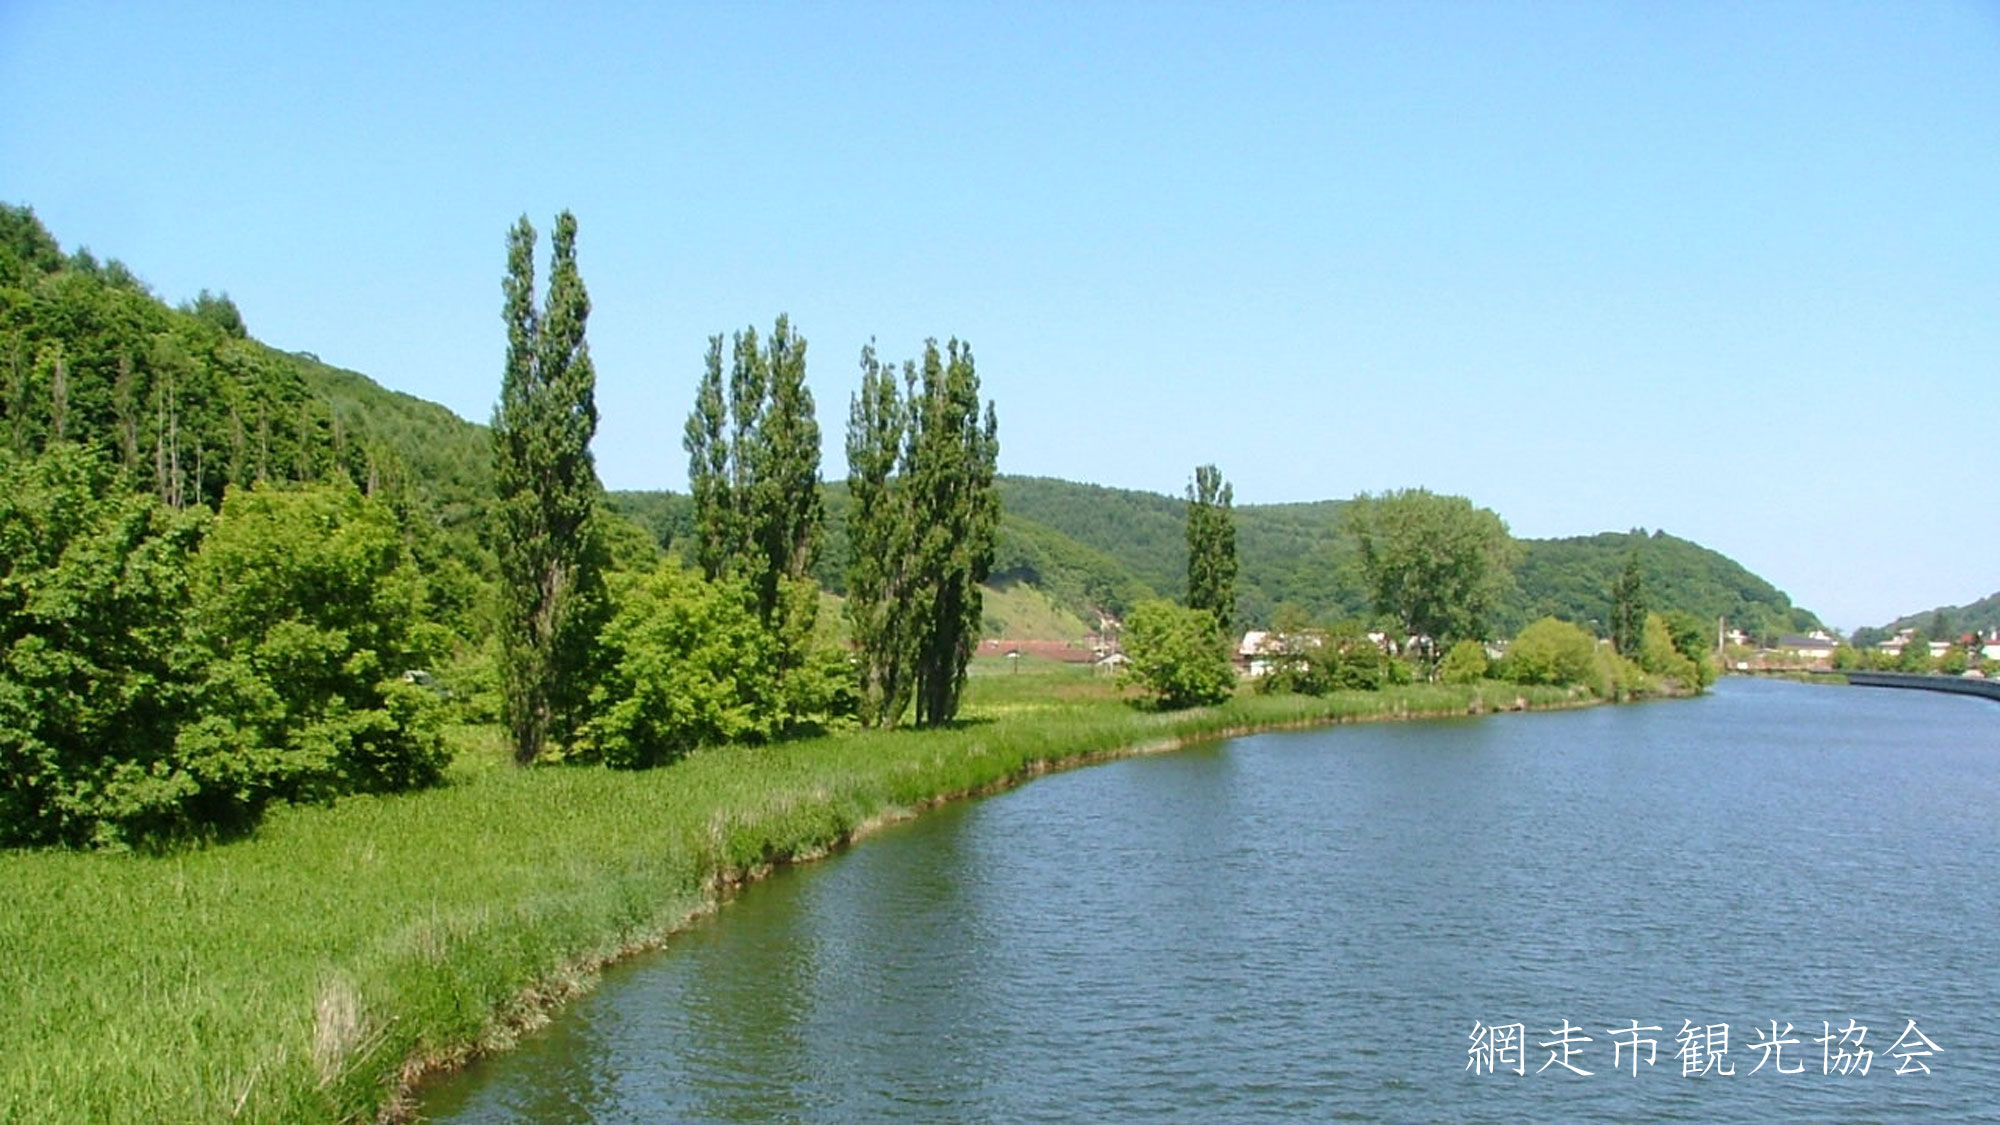 *［風景／夏］ポプラ並木と網走川。写真を撮りながら網走川を散策してみてはいかがですか？